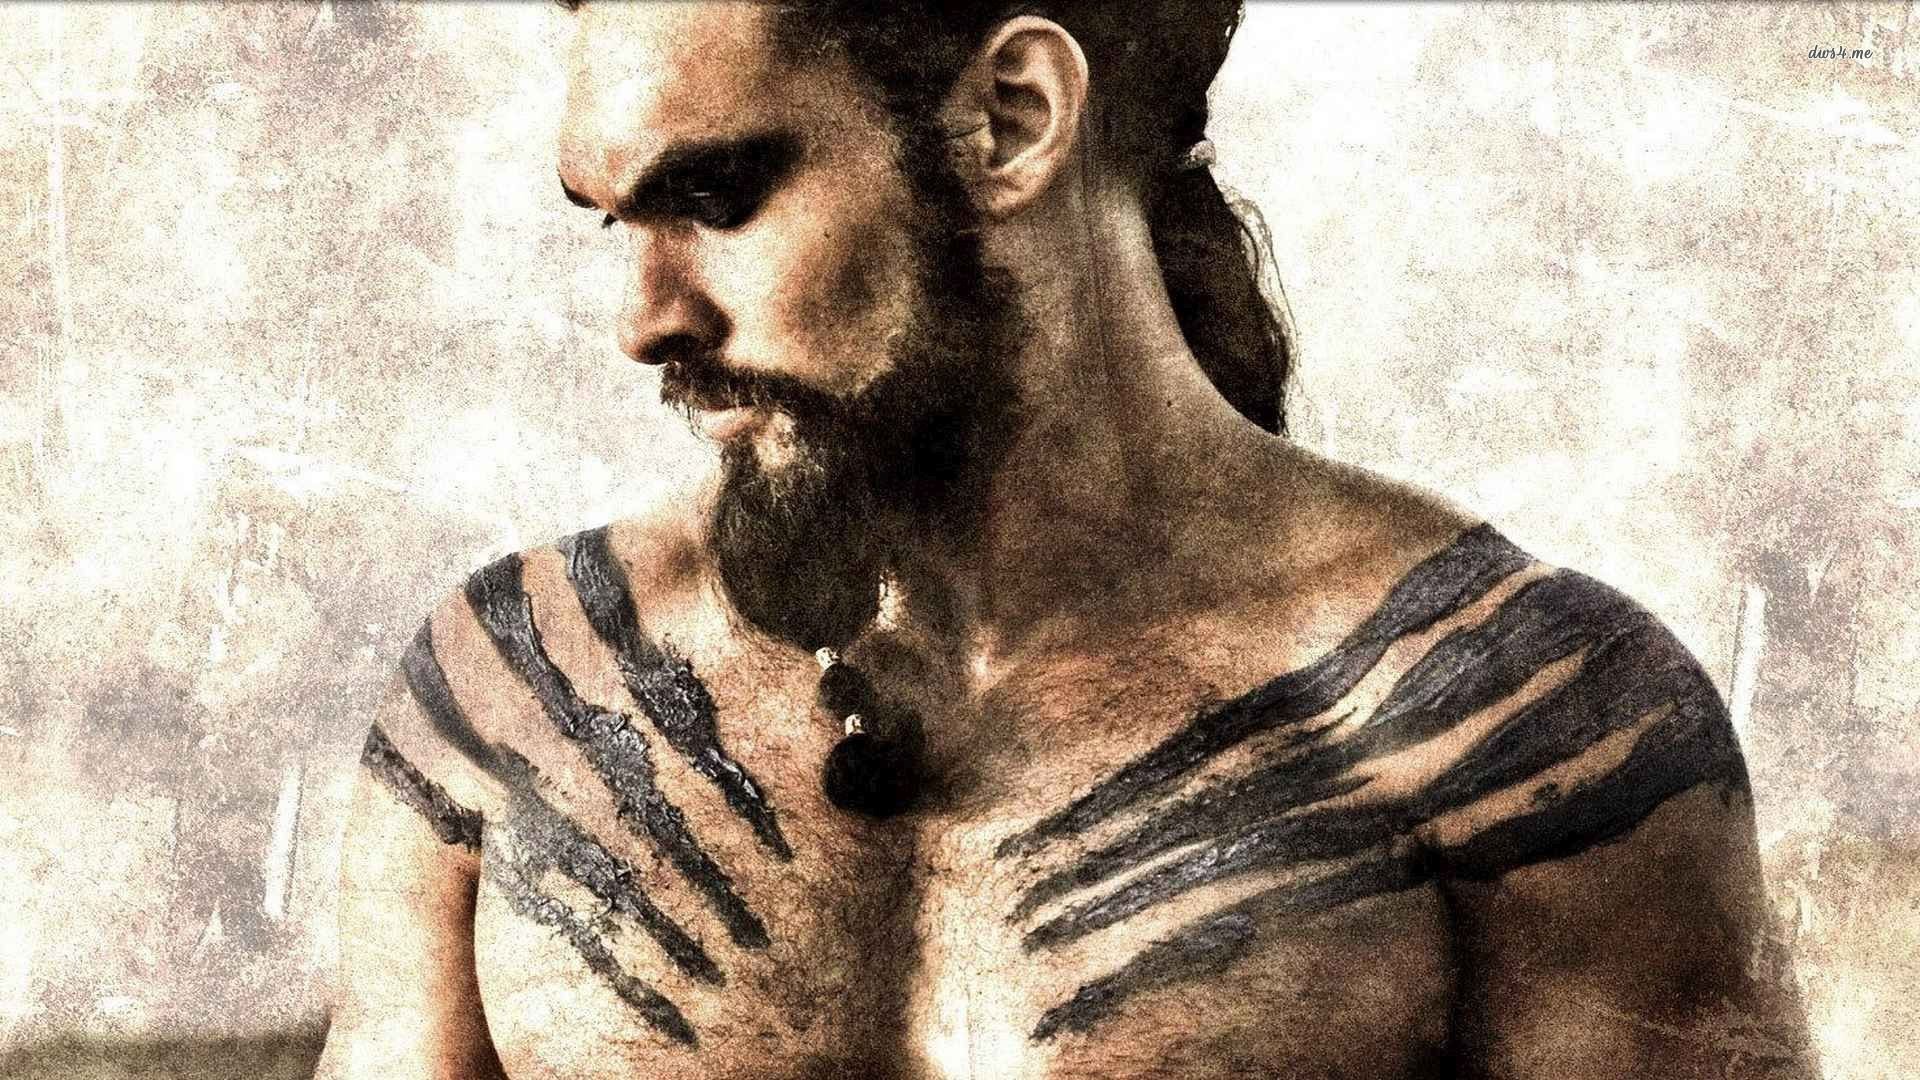 Khal Drogo Wallpaper Image